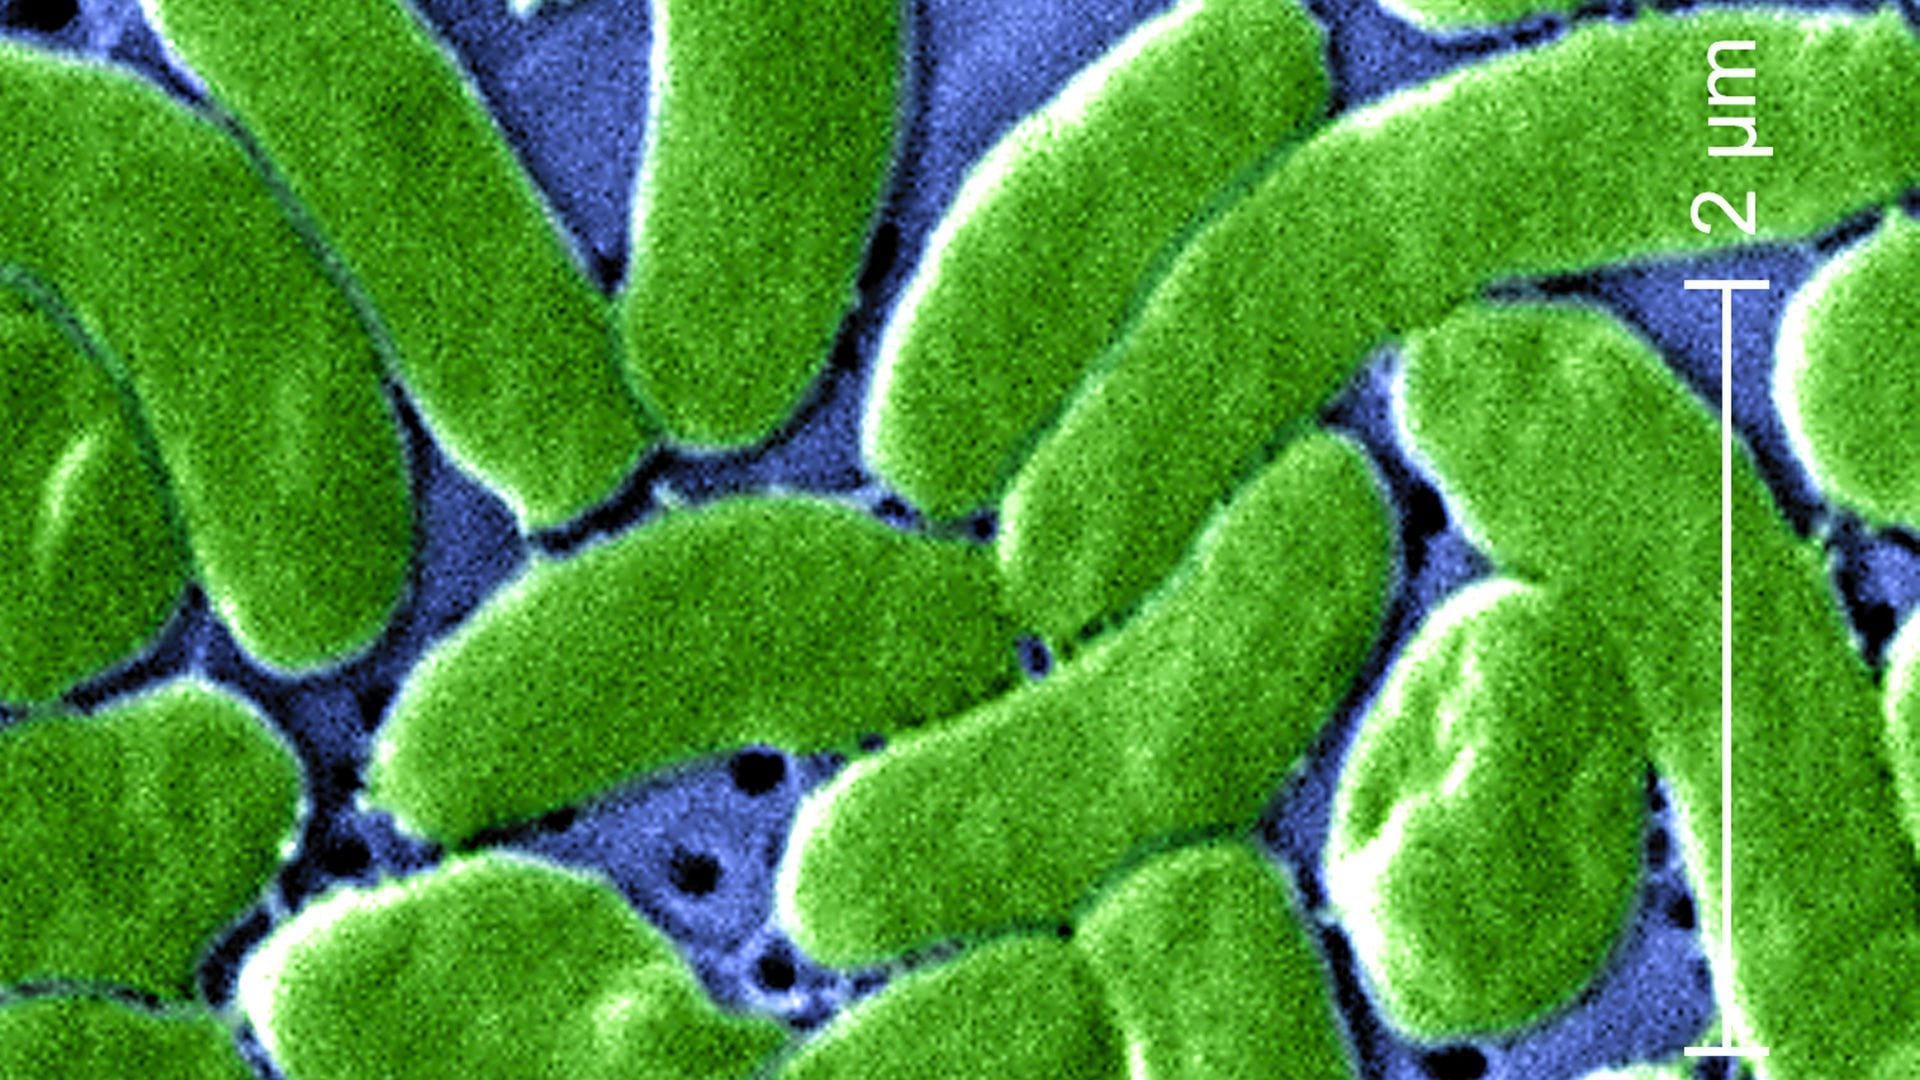 La bacteria Vibrio vulnificus es causante de una infección potencialmente mortal